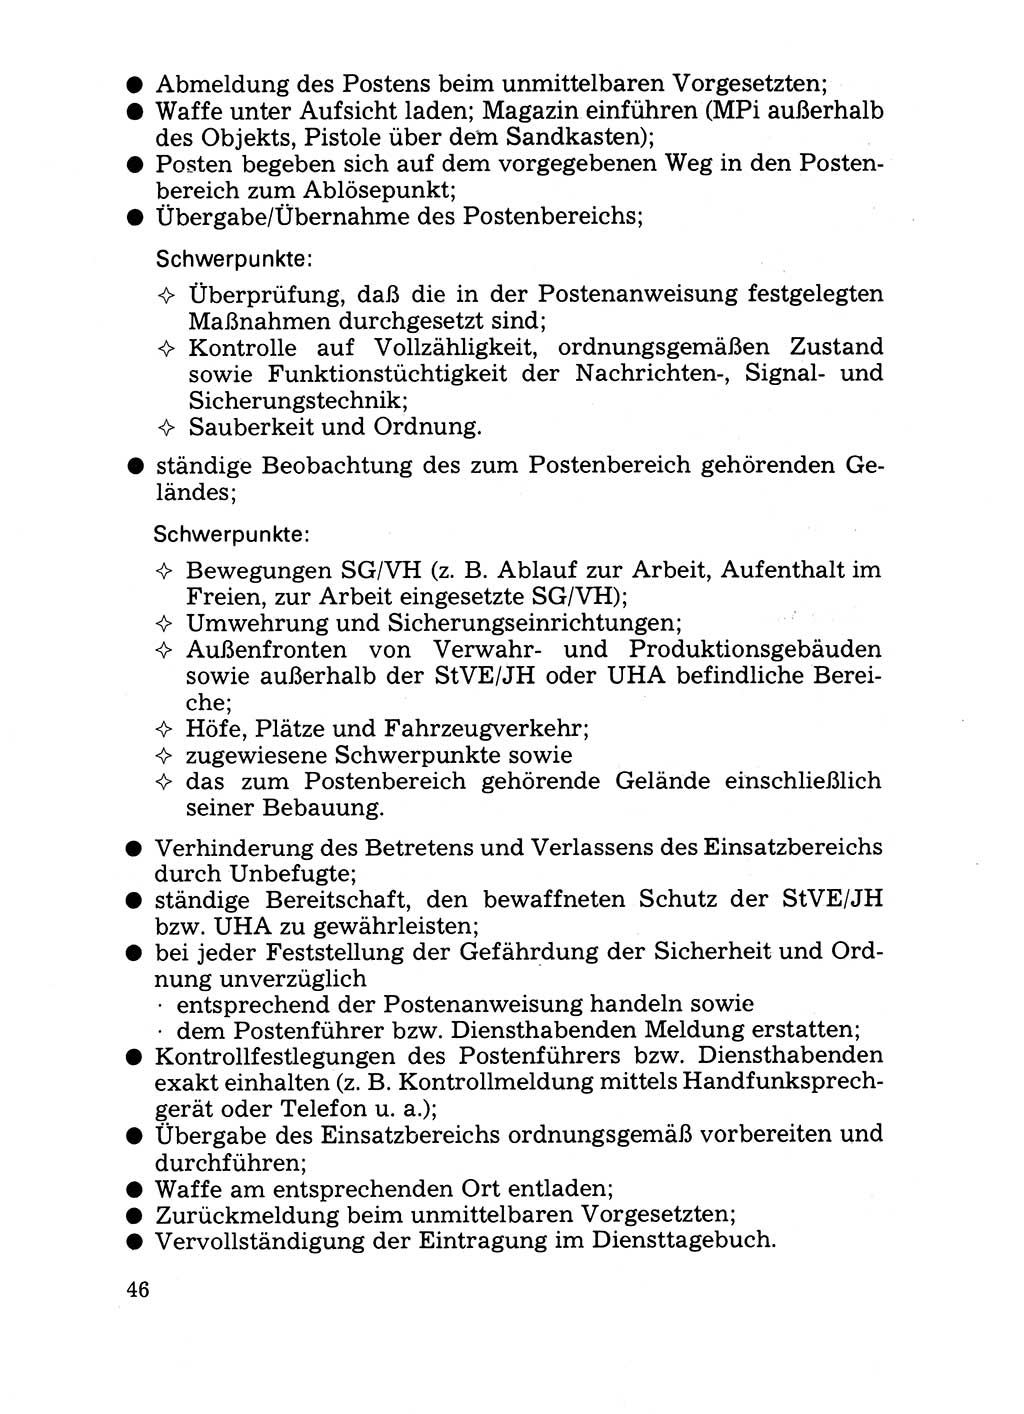 Handbuch für operative Dienste, Abteilung Strafvollzug (SV) [Ministerium des Innern (MdI) Deutsche Demokratische Republik (DDR)] 1981, Seite 46 (Hb. op. D. Abt. SV MdI DDR 1981, S. 46)